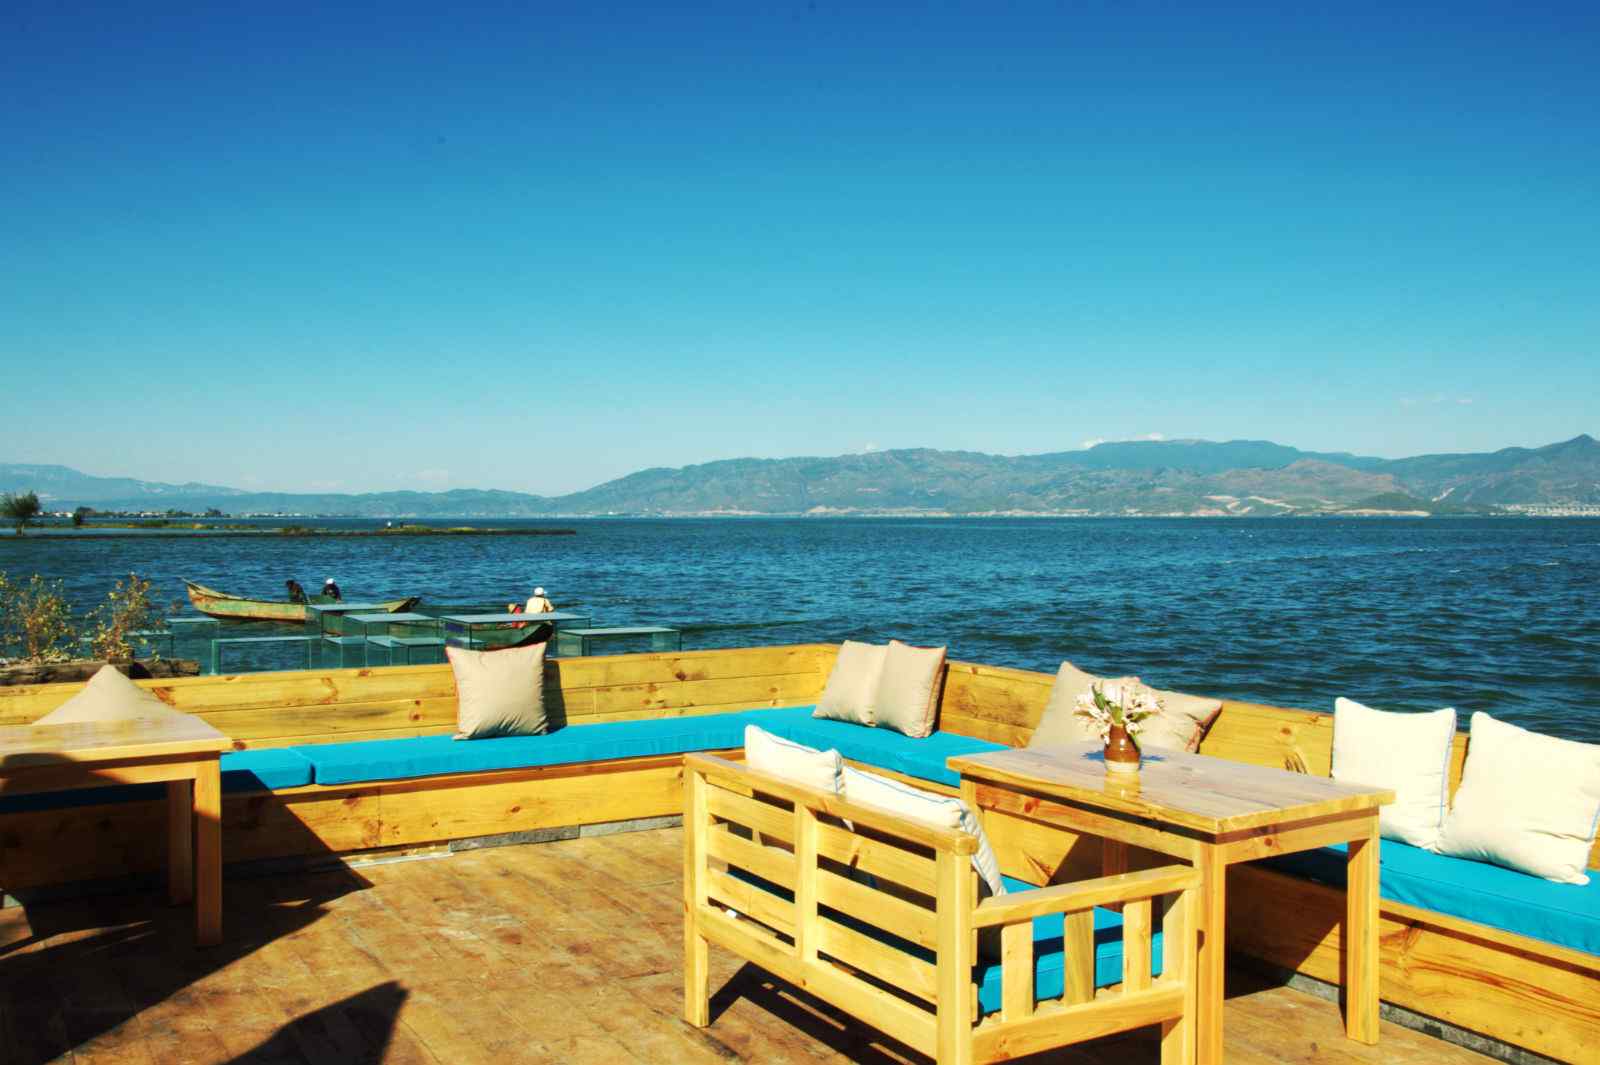 大理洱海湖边风景图片高清桌面壁纸